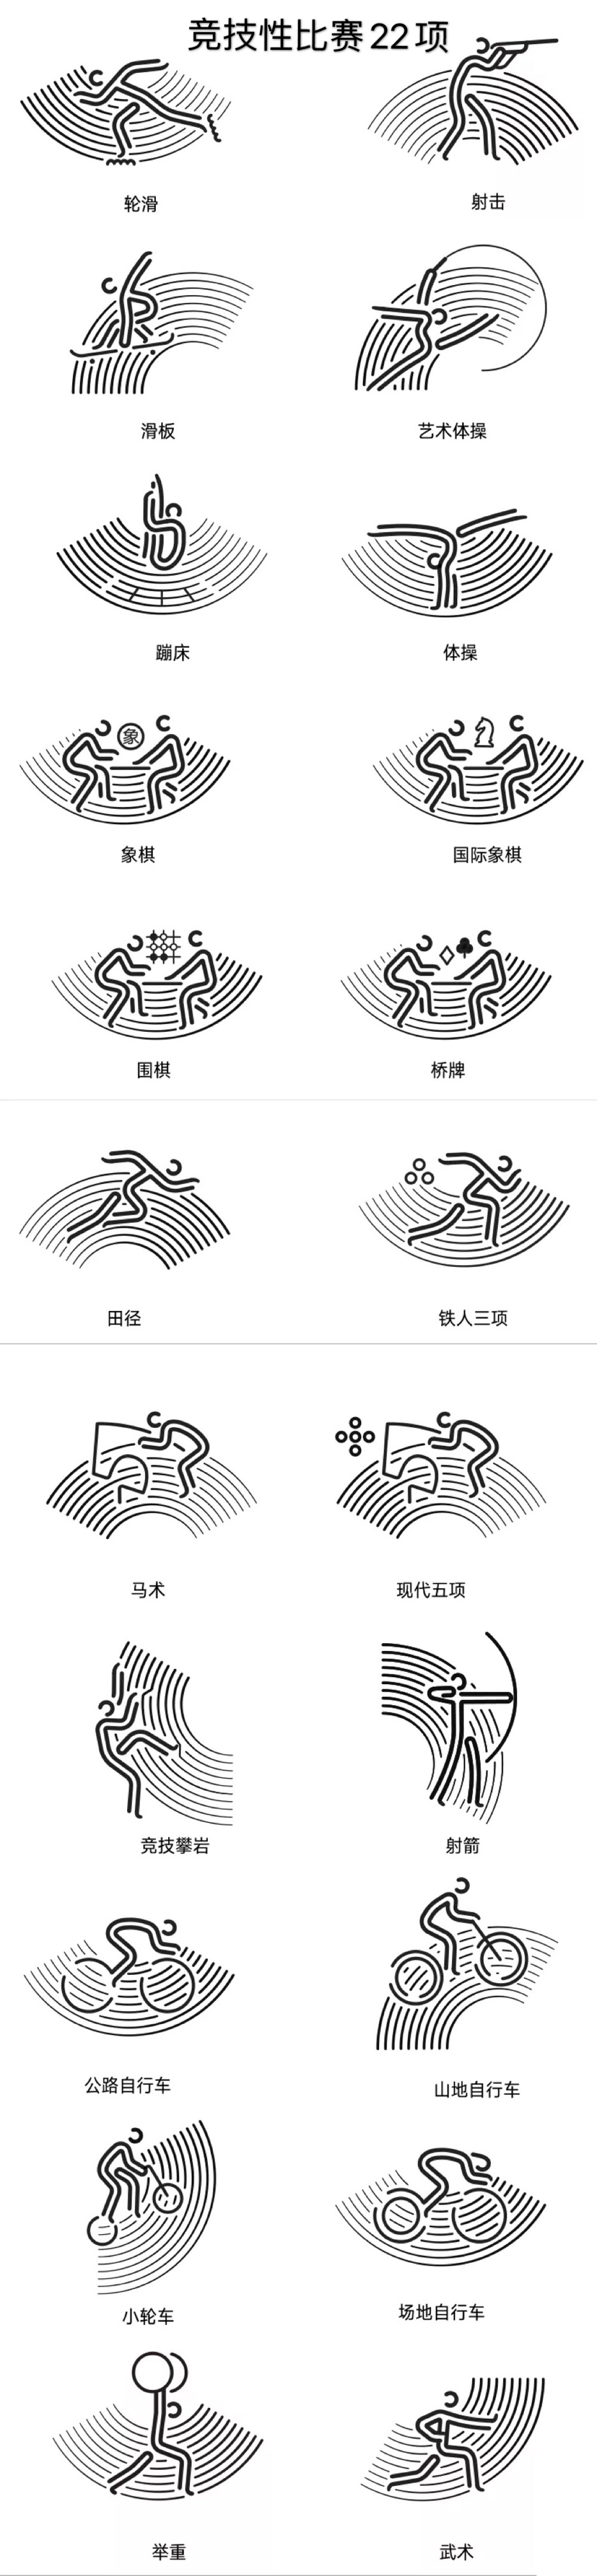 今天发布杭州亚运会体育图标